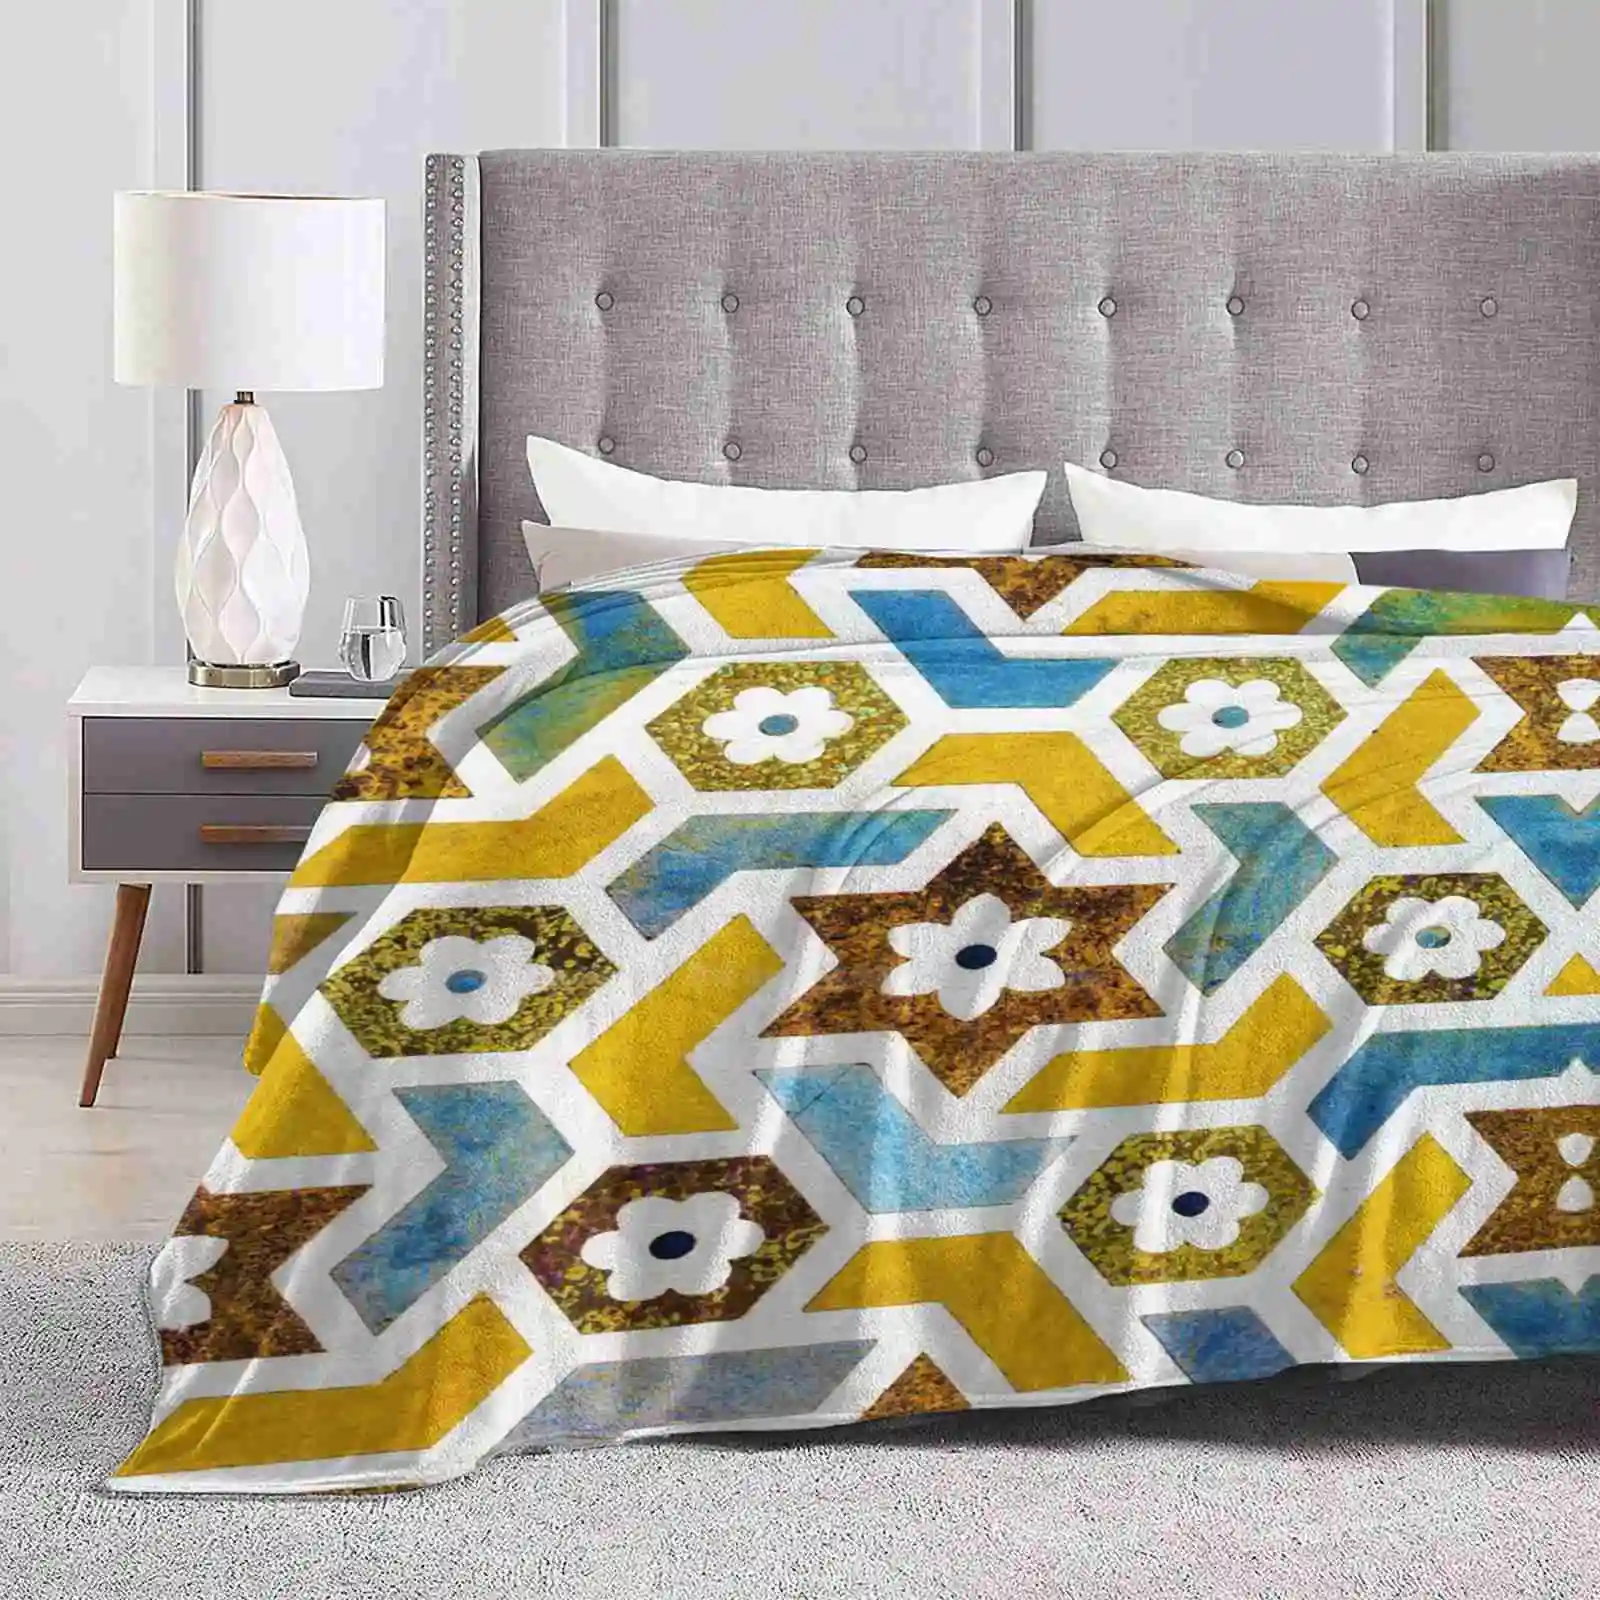 

Марокканская блусс # Декор # Buyart супер теплые мягкие одеяла накидка на диван/кровать/Путешествие графический узор Марокканская экзотическая плитка